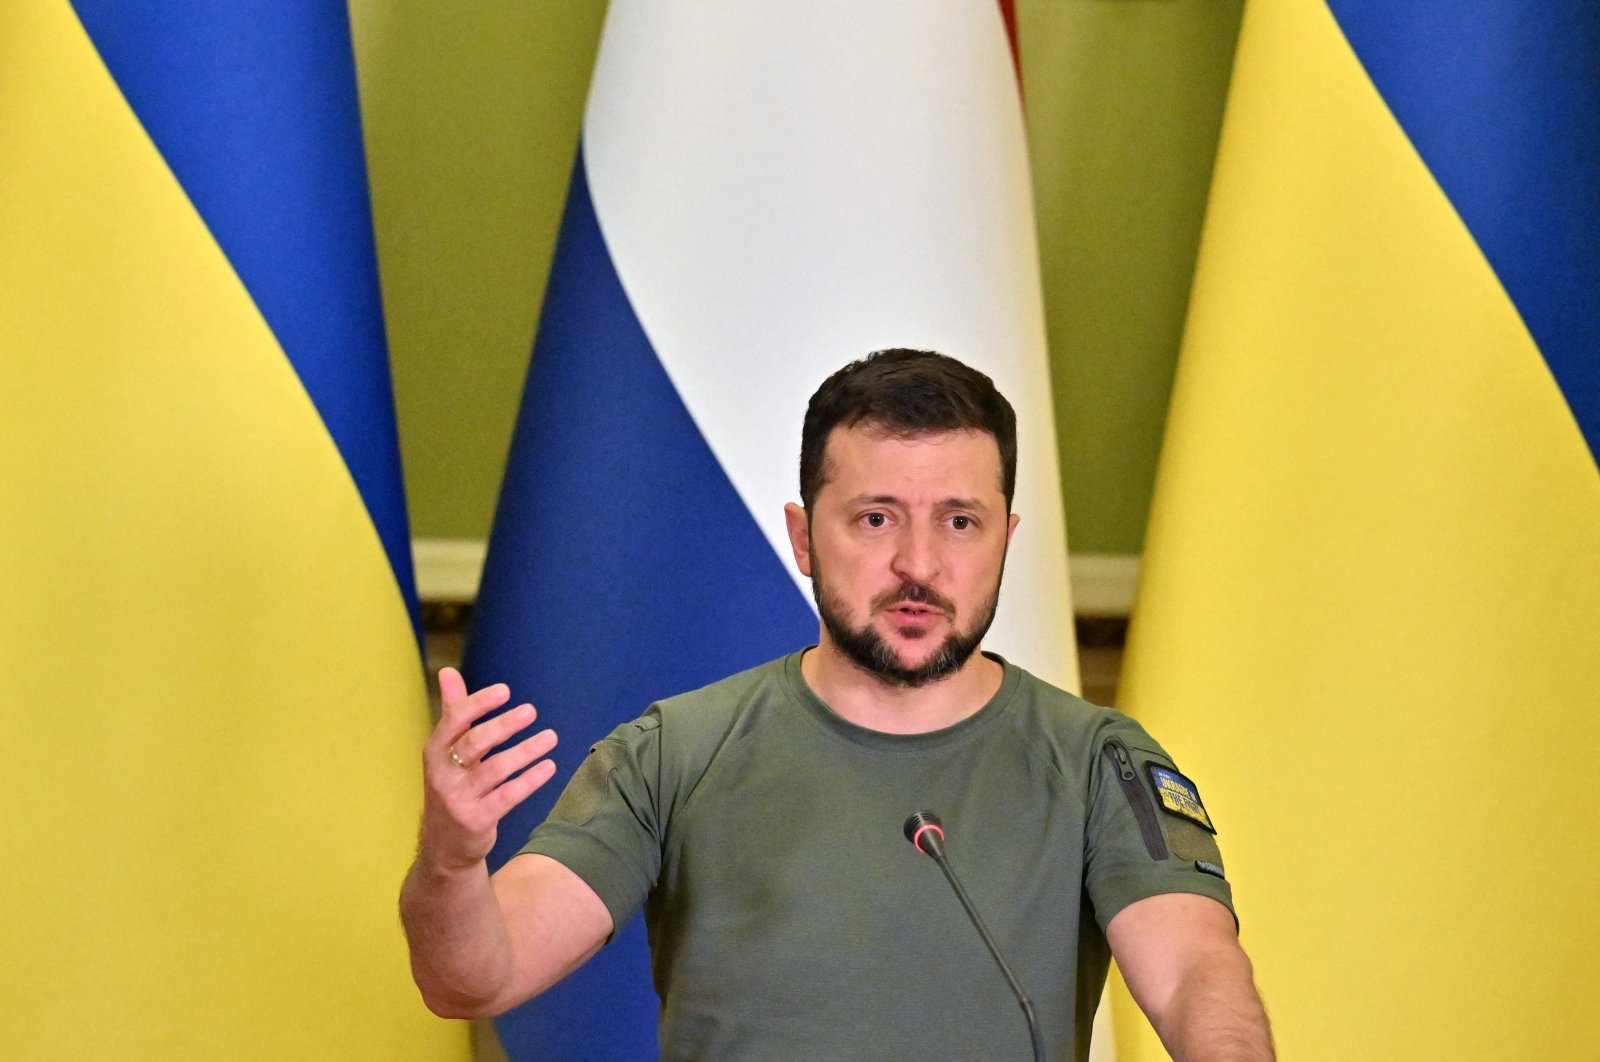 Ukrainos prezidentas atleido 28 šalies saugumo tarnybos darbuotojus